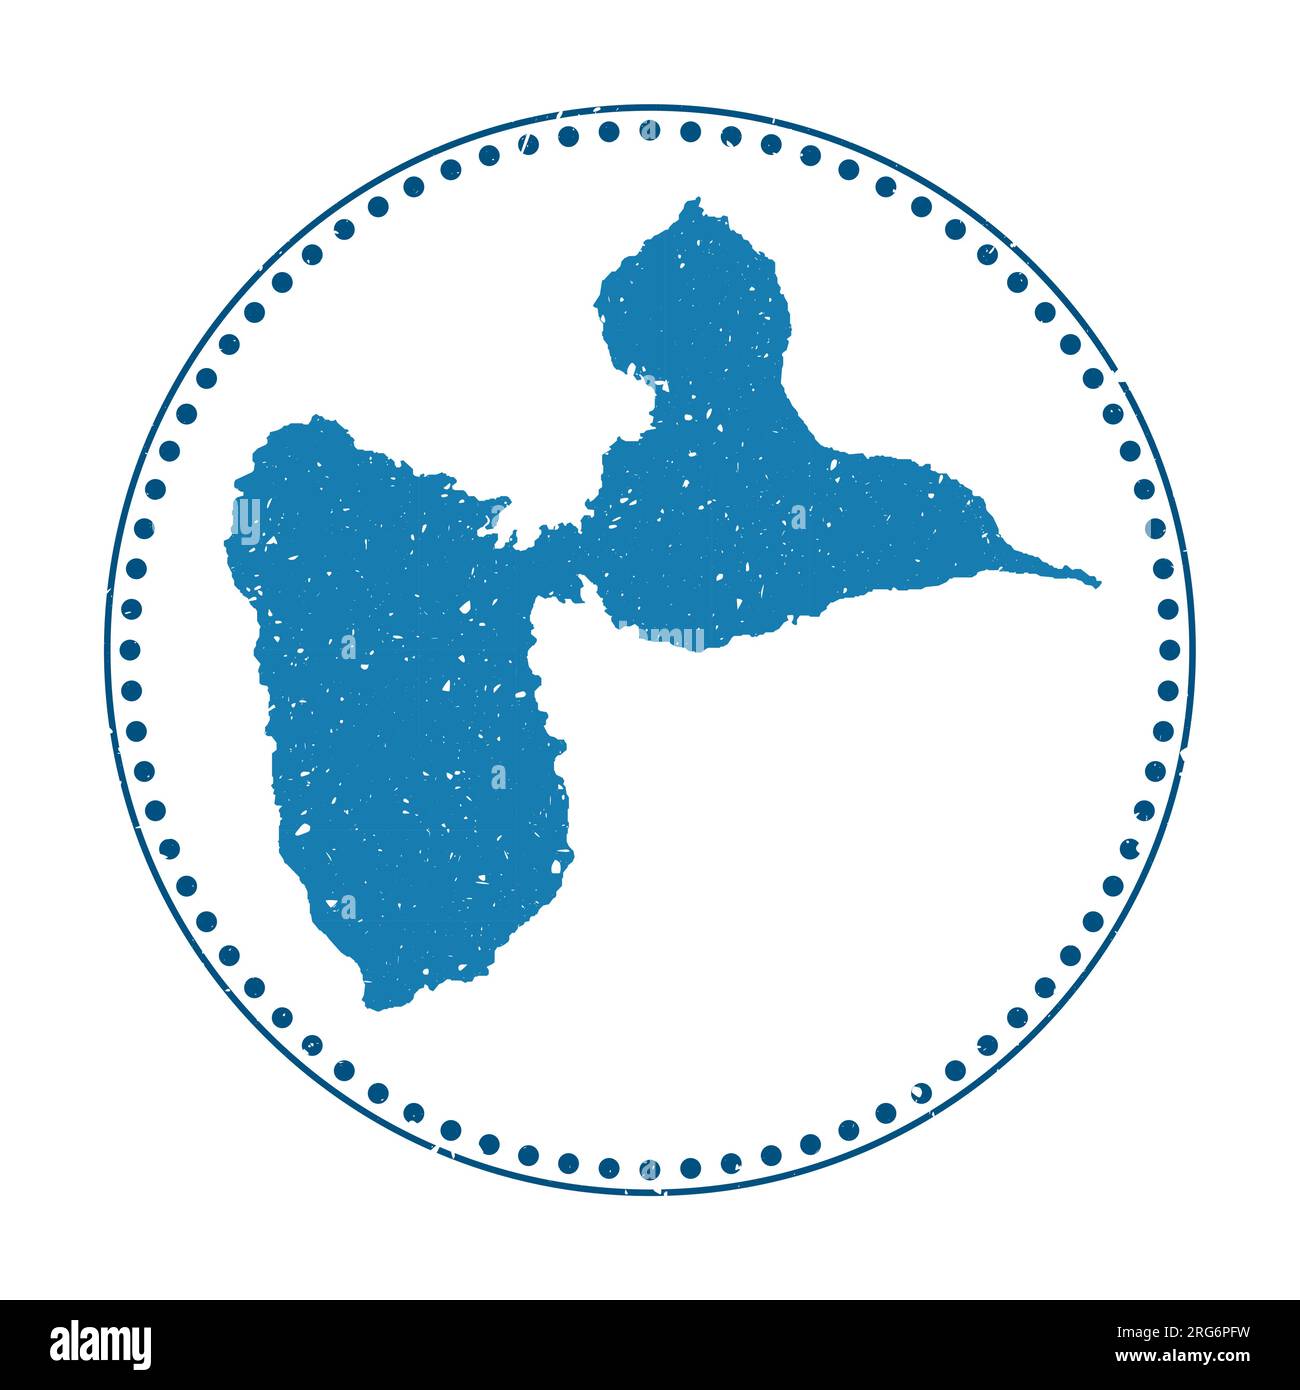 Sticker Grande-Terre. Timbre en caoutchouc de voyage avec carte de l'île, illustration vectorielle. Peut être utilisé comme insigne, logotype, étiquette, autocollant ou badge du G. Illustration de Vecteur